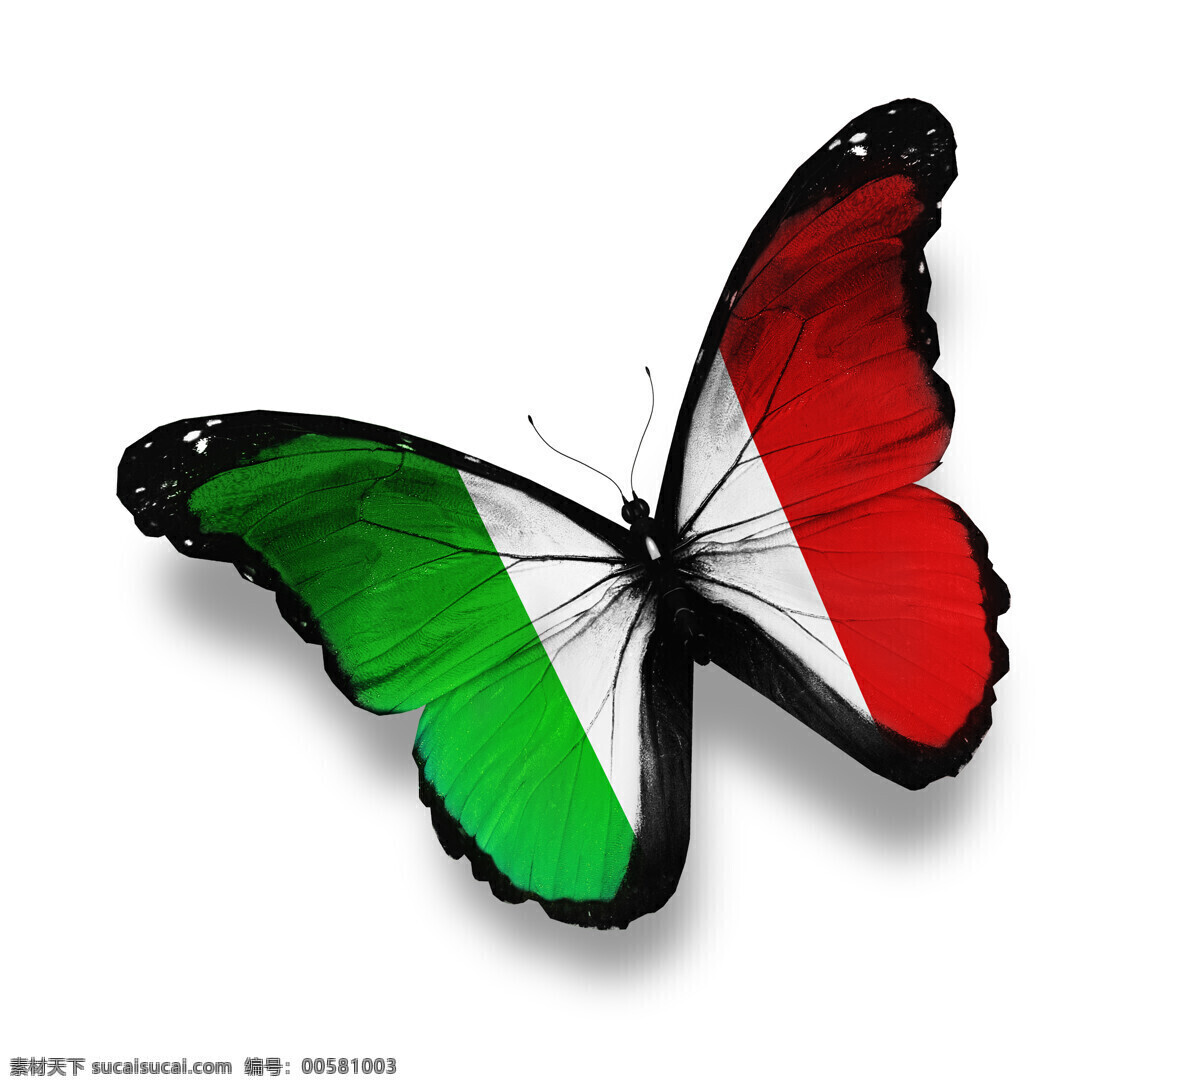 意大利 国旗 蝴蝶 意大利国旗 美丽蝴蝶 漂亮蝴蝶 昆虫动物 国旗图片 生活百科